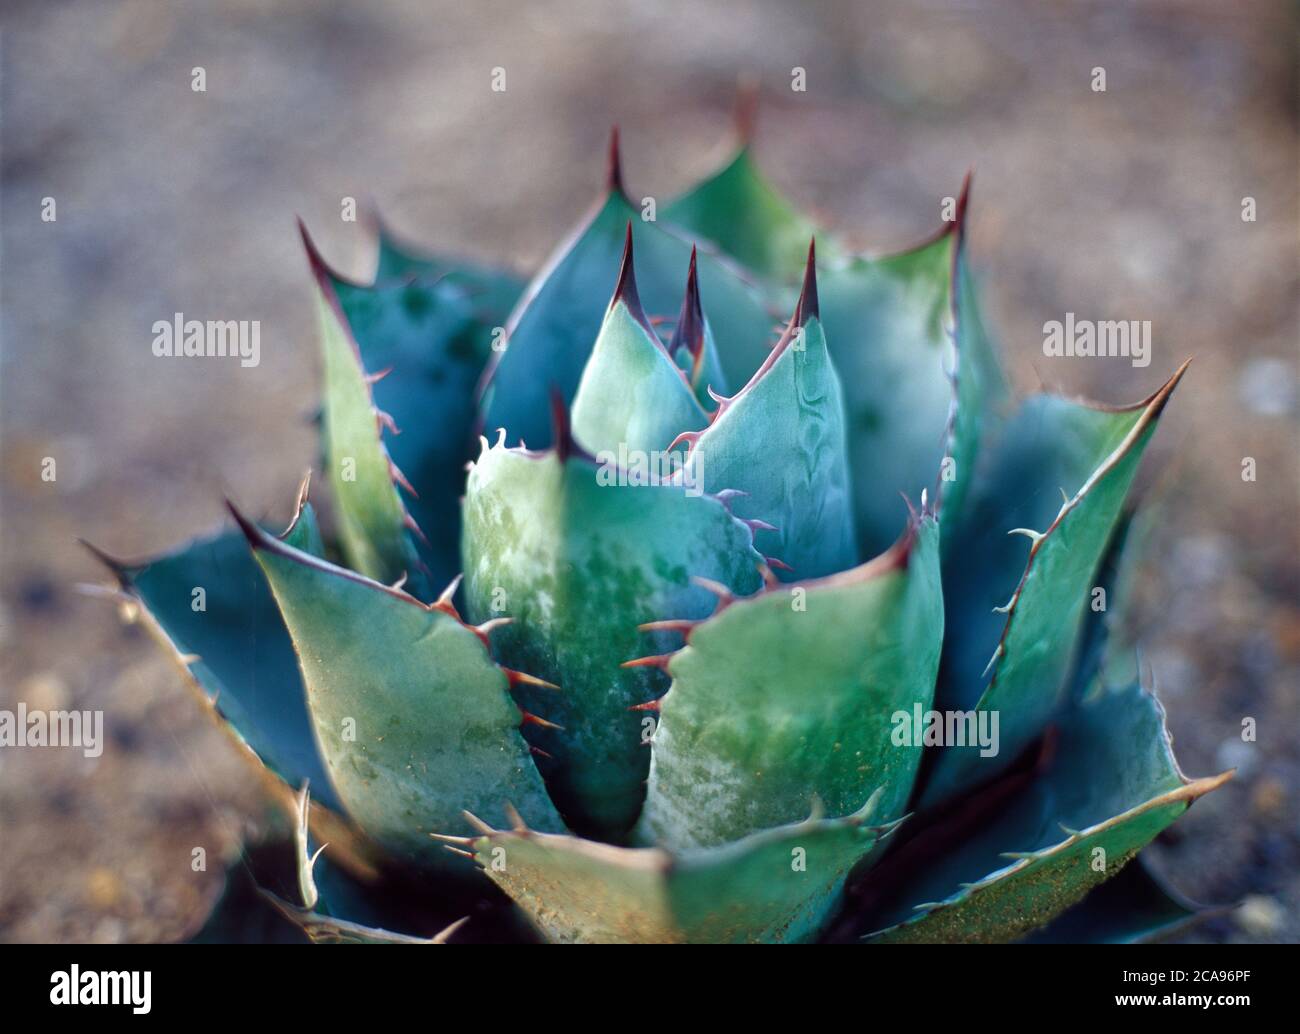 An Agave Potatorium cactus in close-up Stock Photo